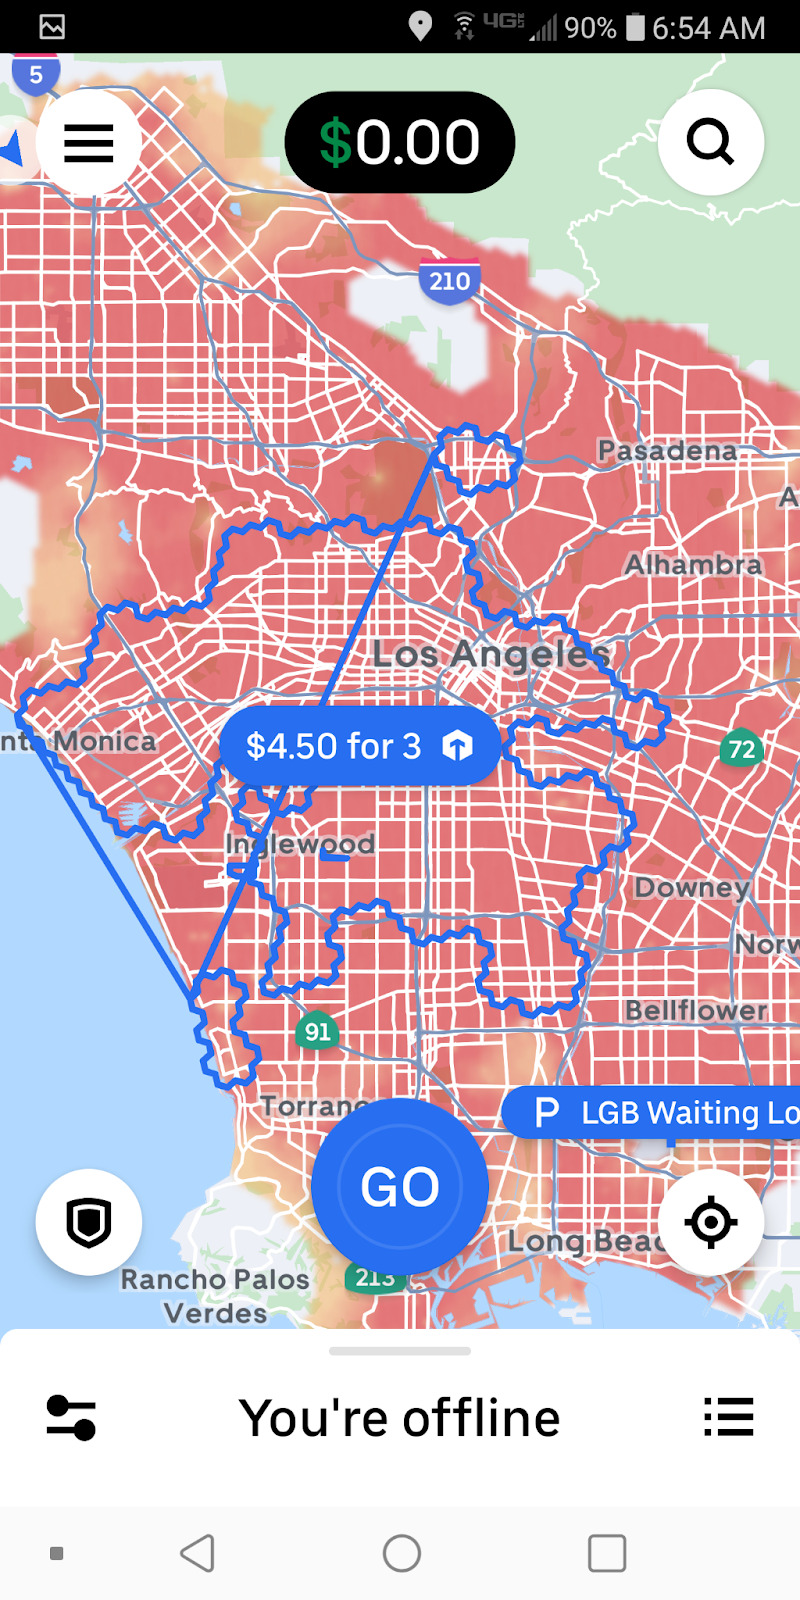 Sergios uber hotspots in LA